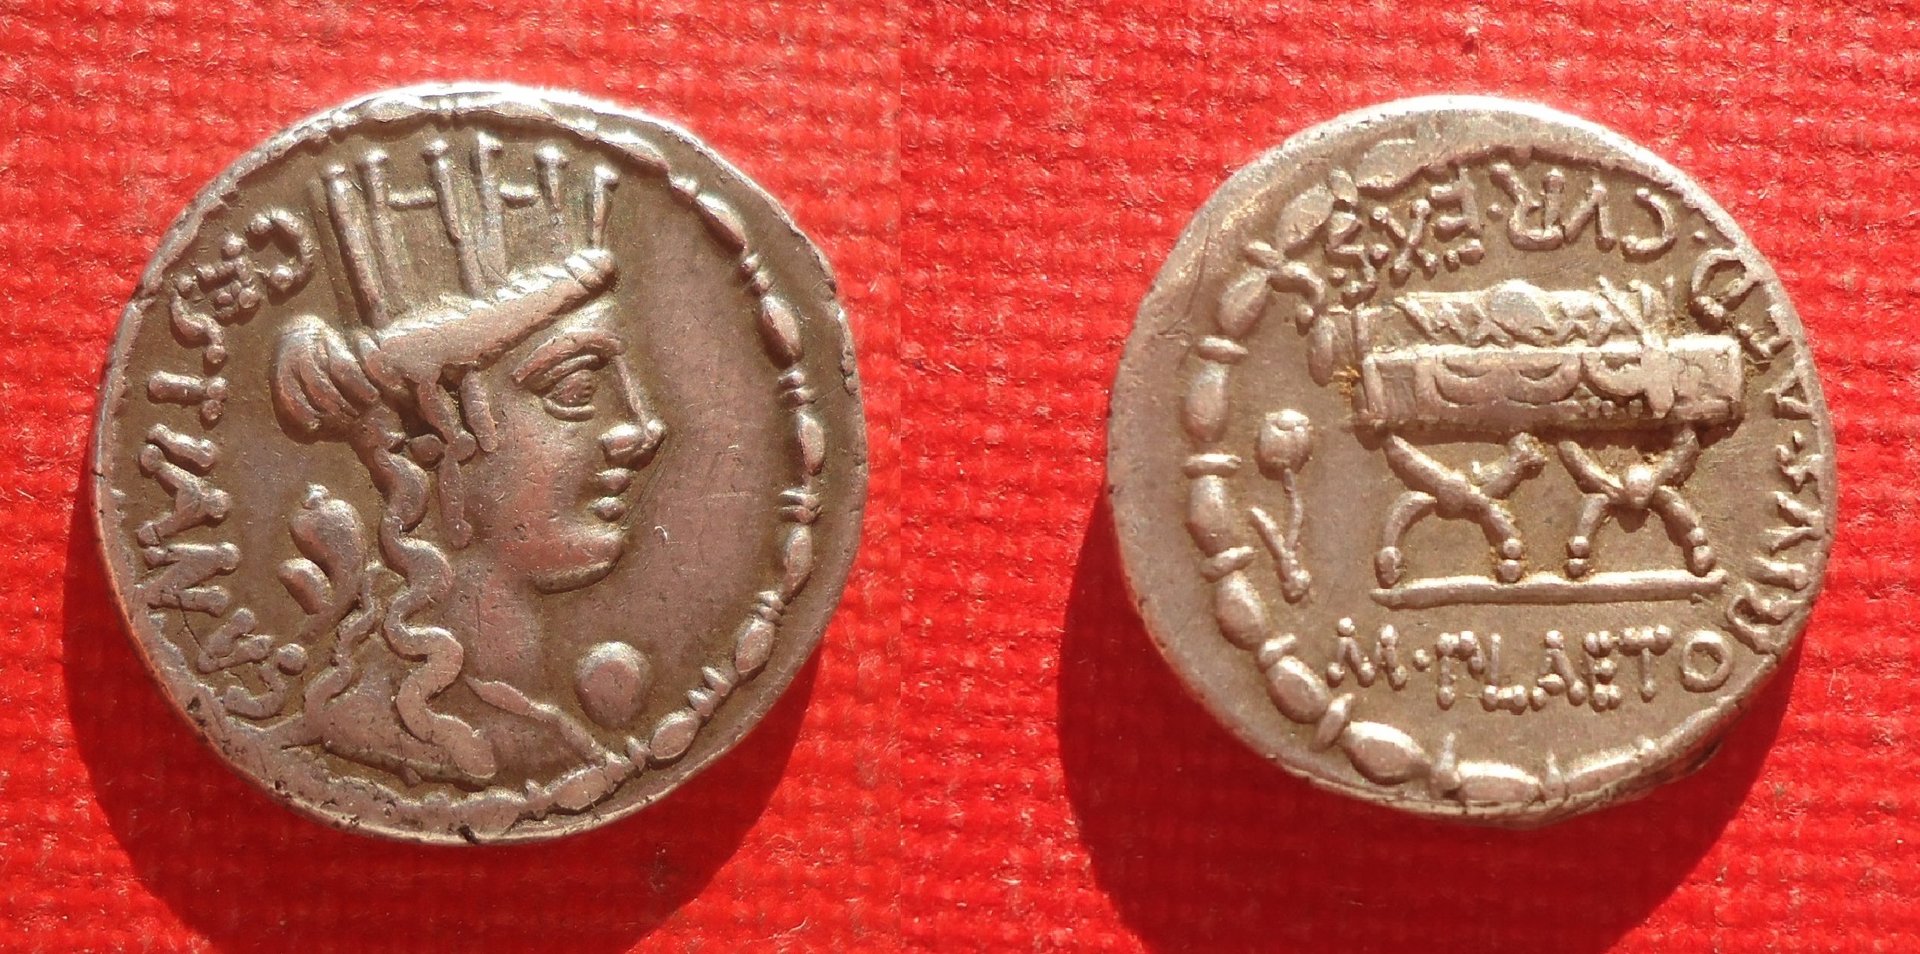 RR - Plaetoria Curule Chair denarius (0).jpg